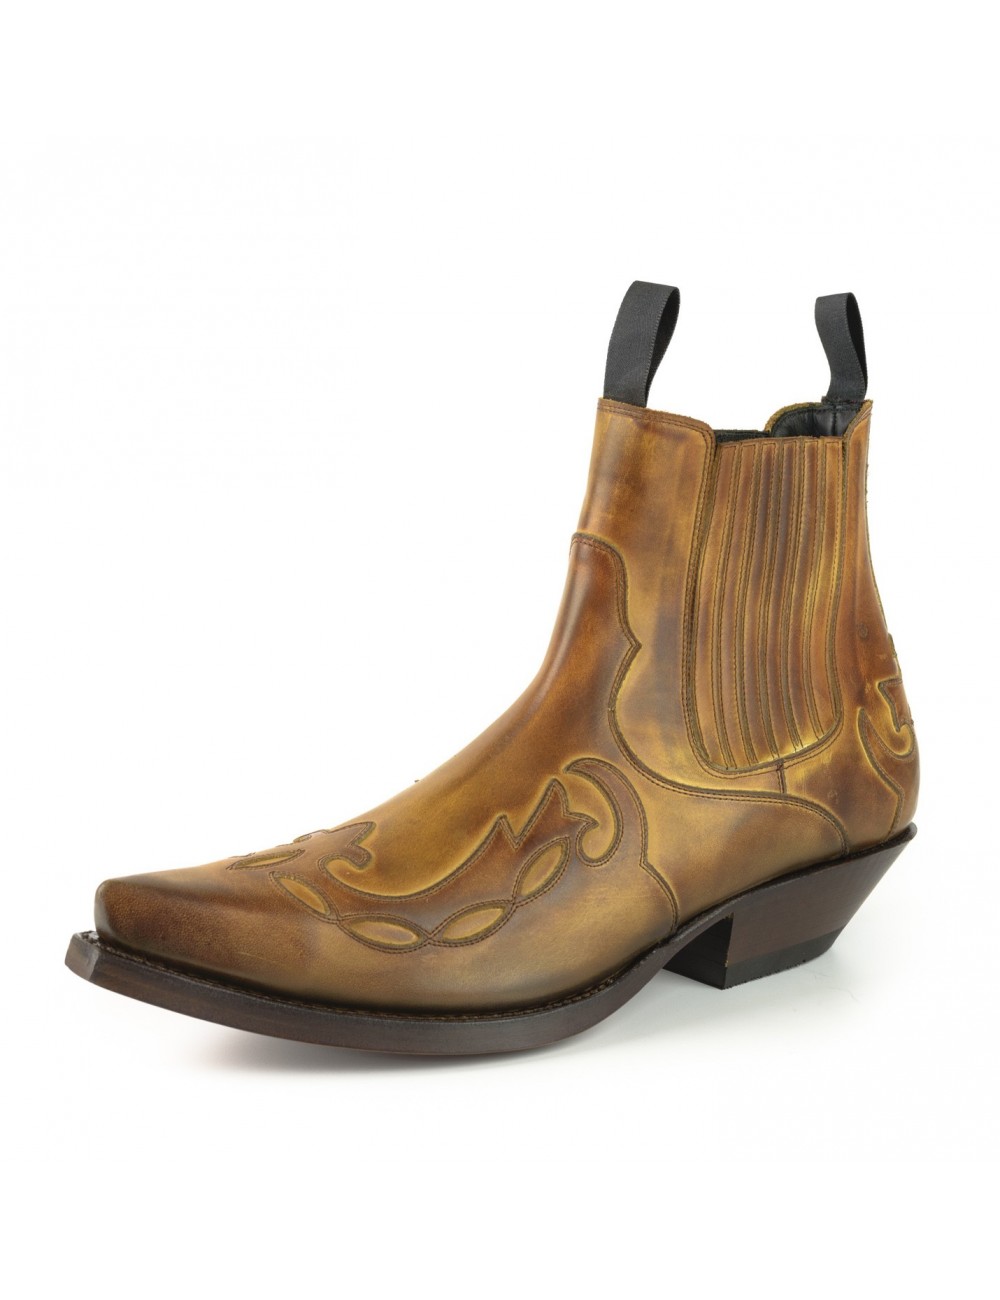 Boots cowboy cuir bordeaux vintage - Bottines cowboy artisanales